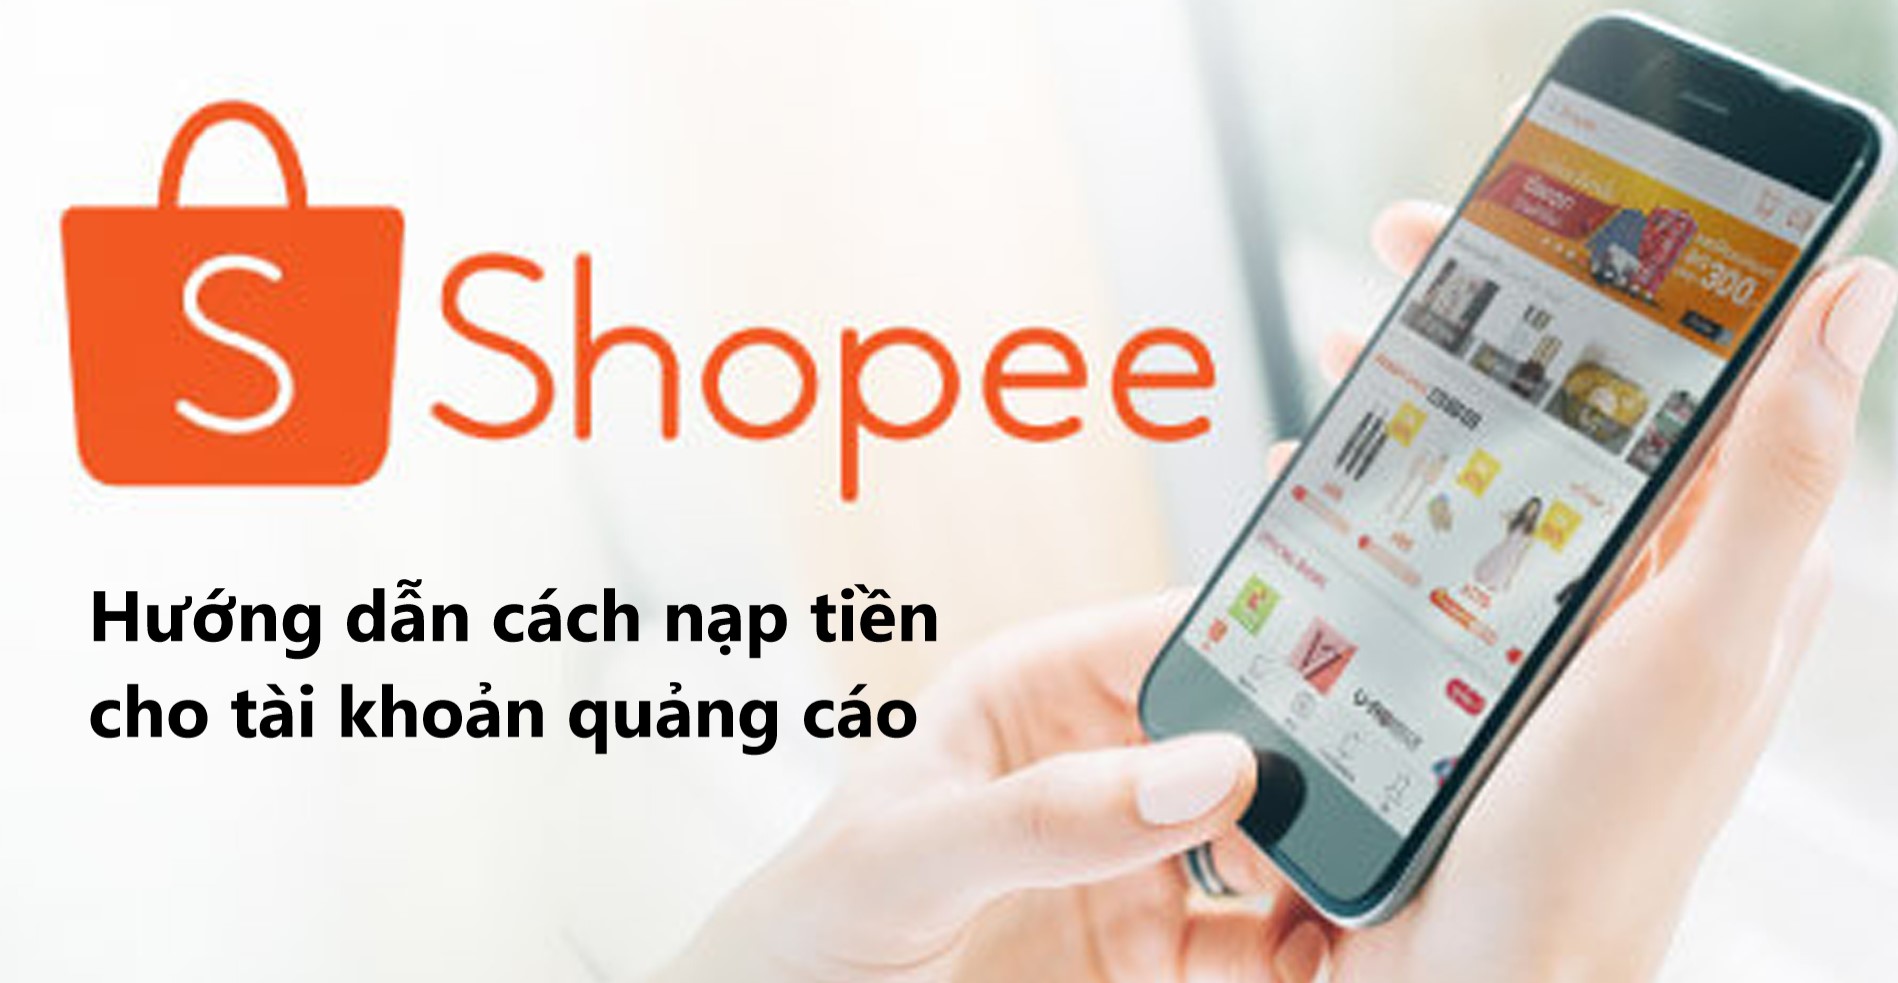 Hướng dẫn cách nạp tiền cho tài khoản quảng cáo trên Shopee